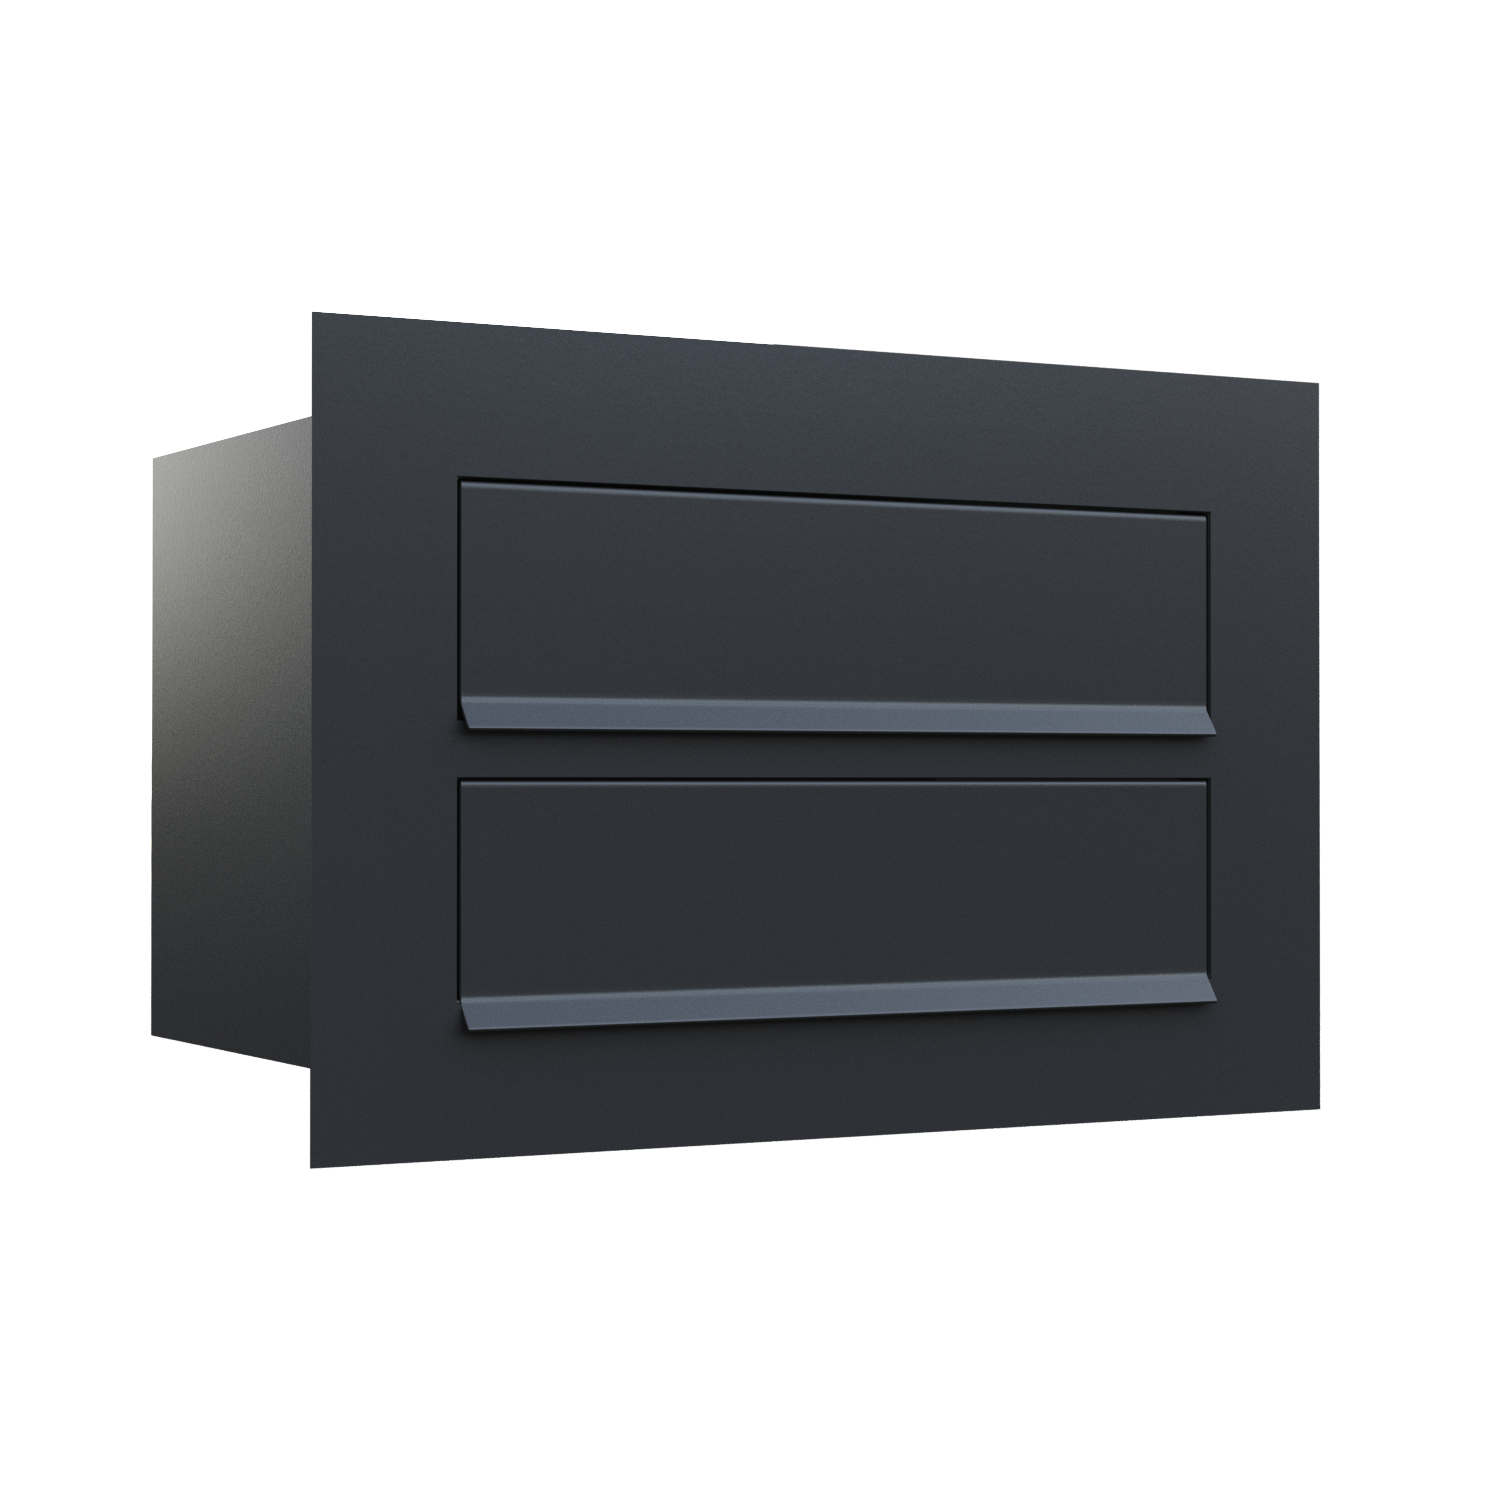 Wbudowana skrzynka pocztowa Como for Two w kolorze czarny